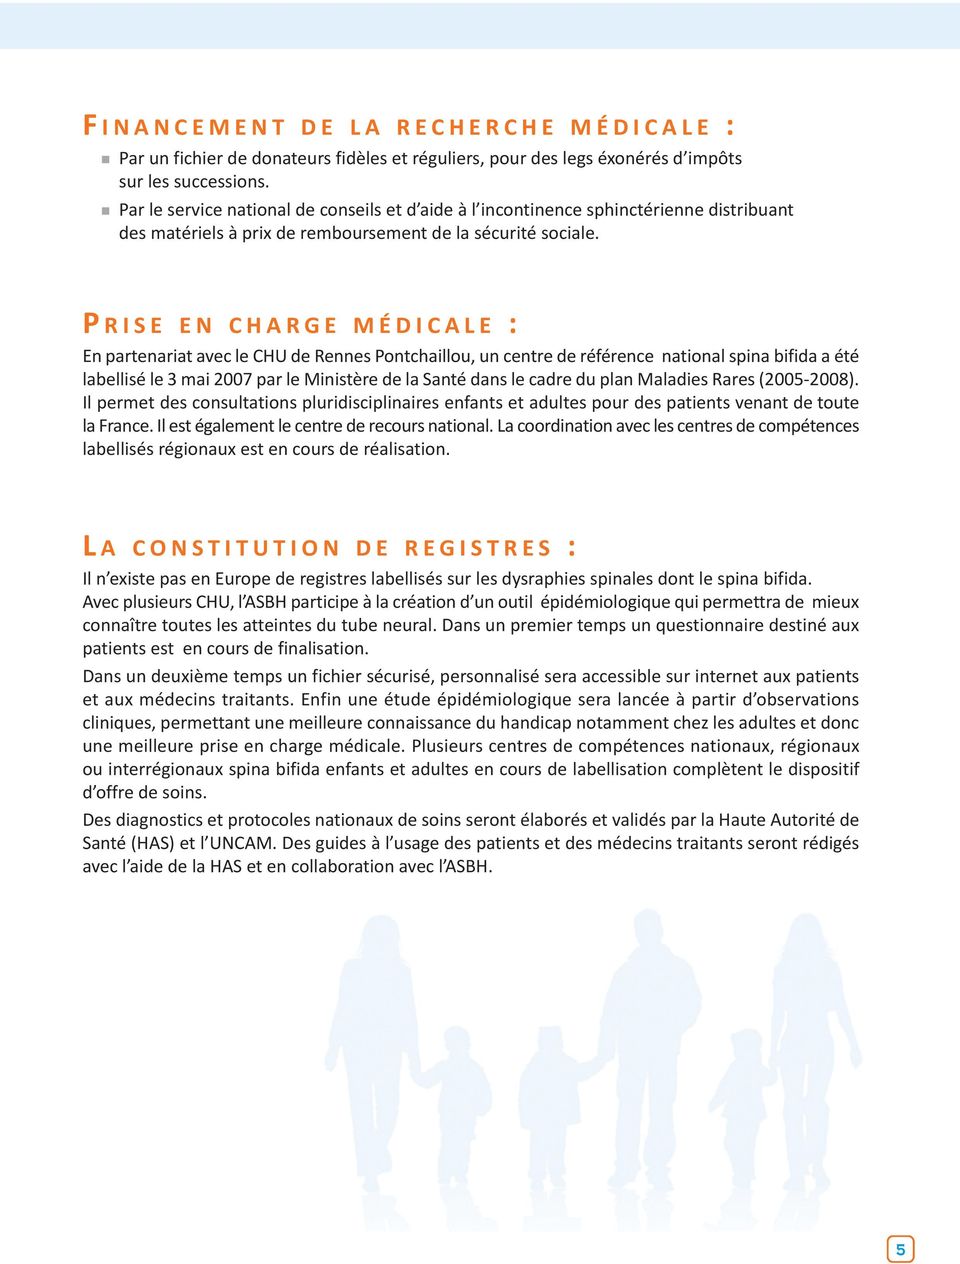 P R I S e e N C H A R g e m é d I C A L e : En partenariat avec le CHU de Rennes Pontchaillou, un centre de référence national spina bifida a été labellisé le 3 mai 2007 par le Ministère de la Santé